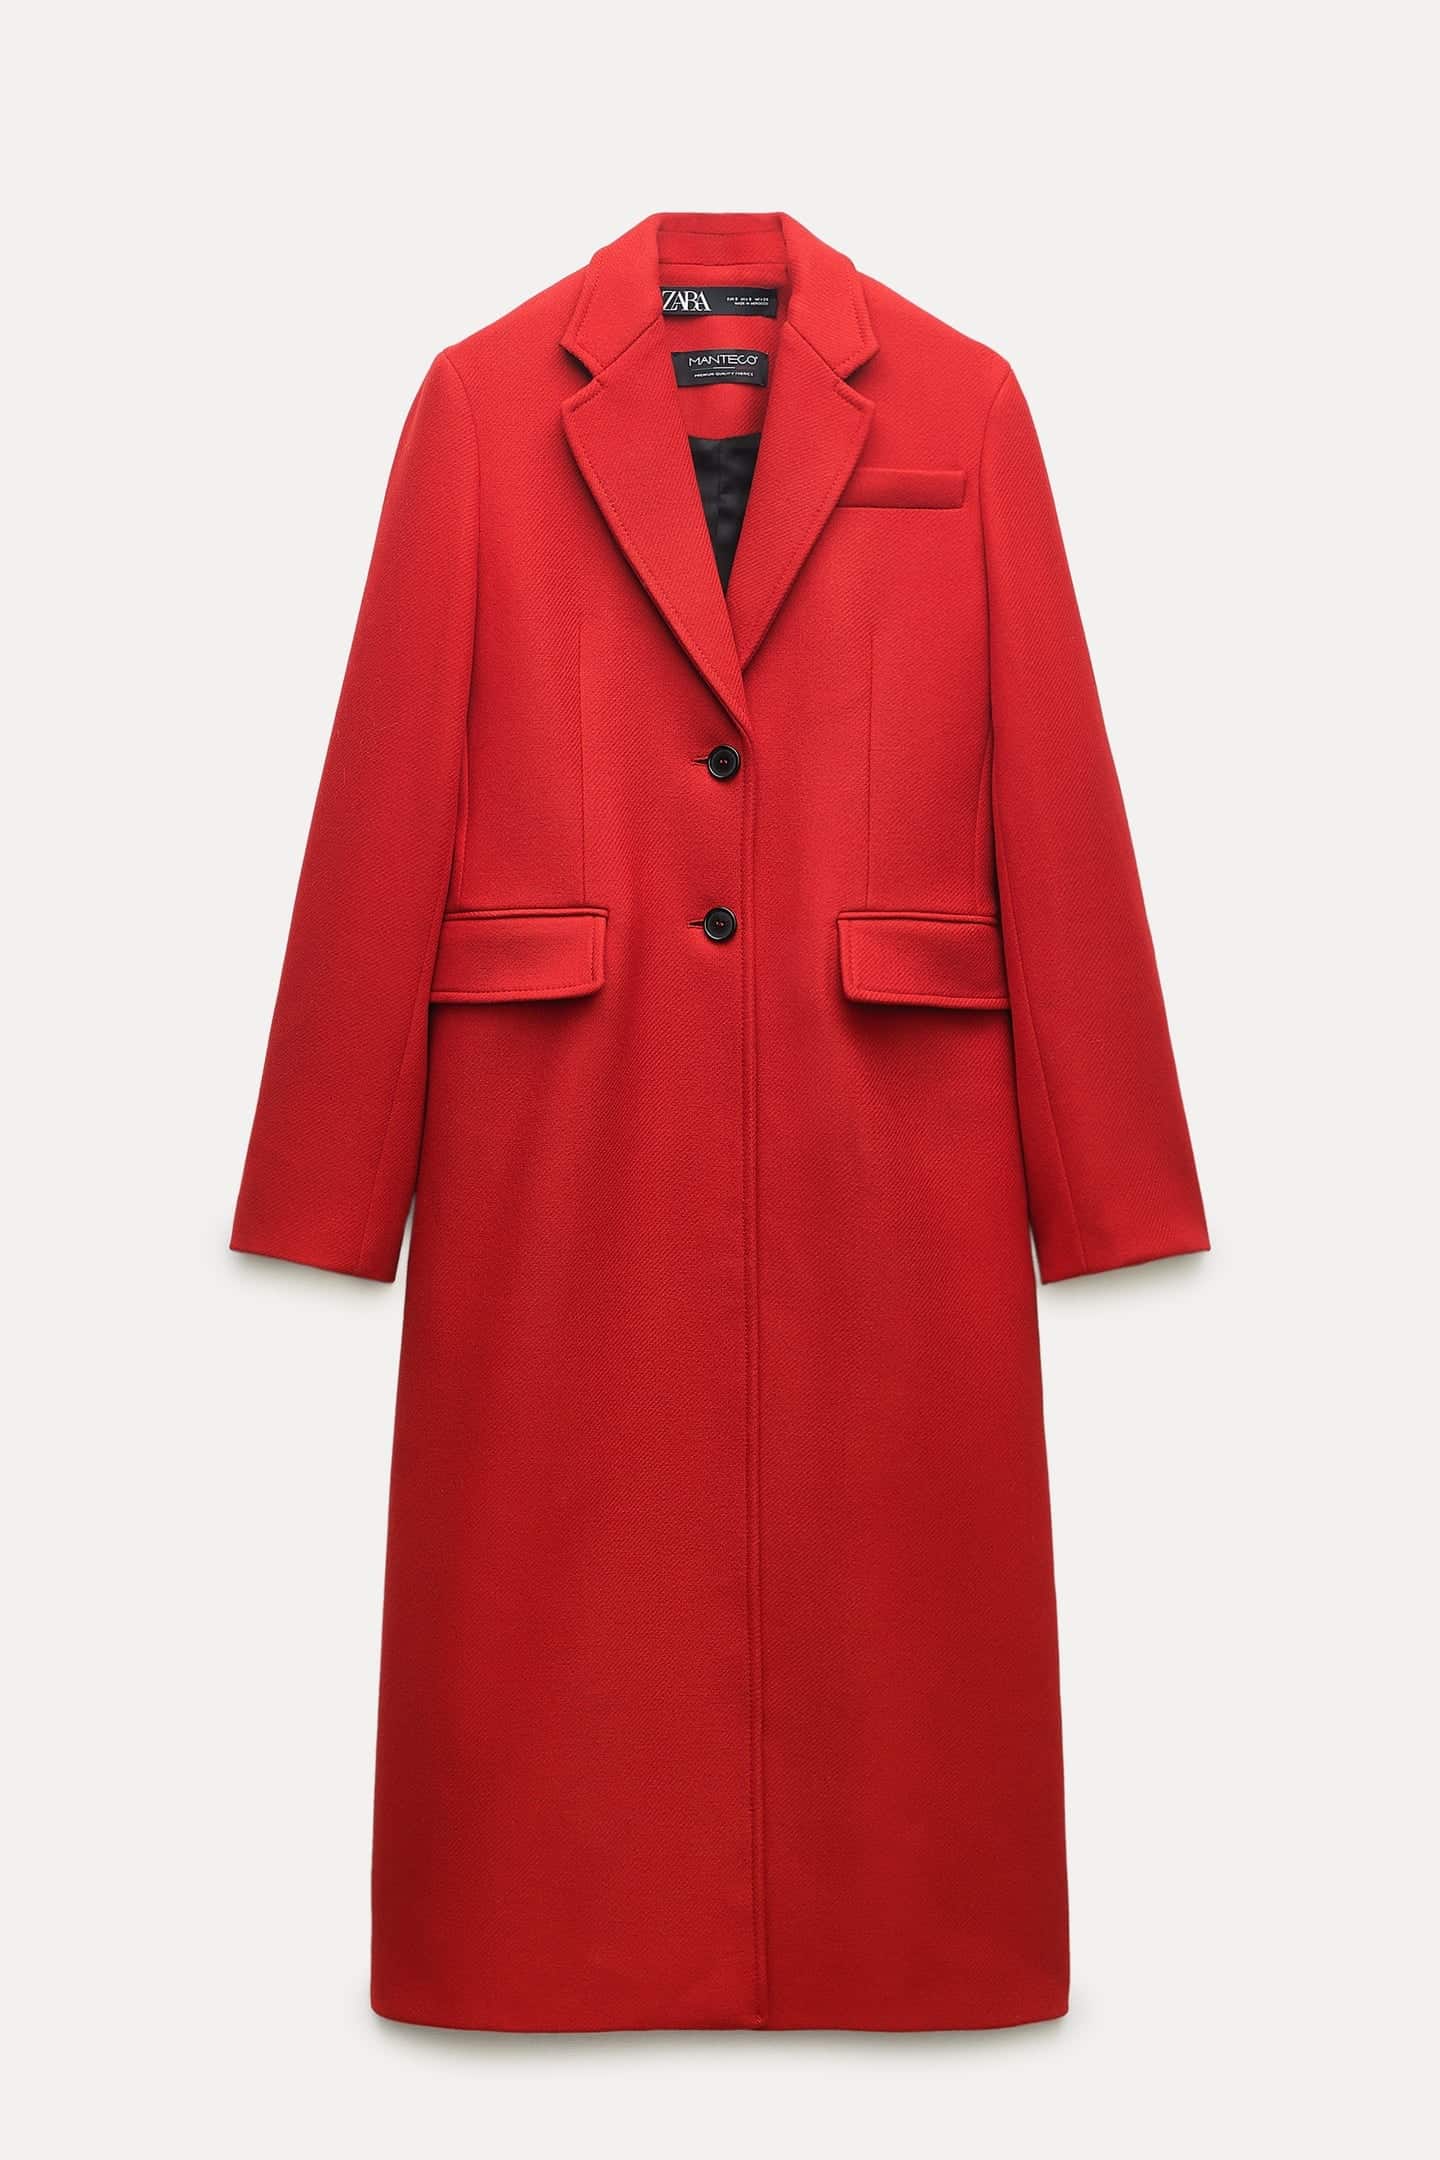 cappotto rosso attillato in lana lunghezza midi Zara